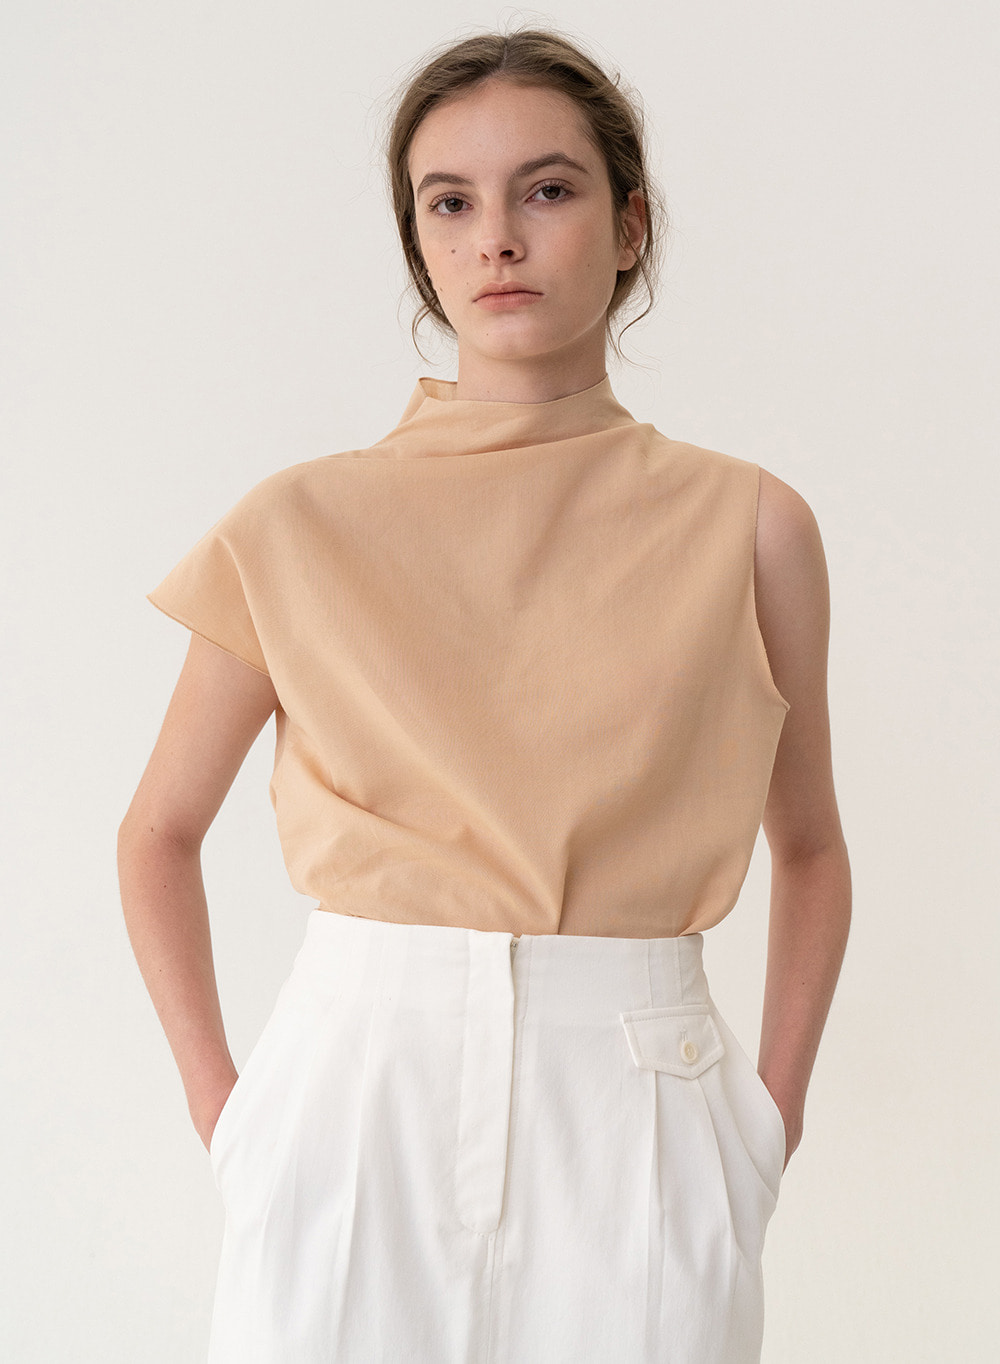 [6/9 출고][ESSENTIAL] Original H-line Skirt White